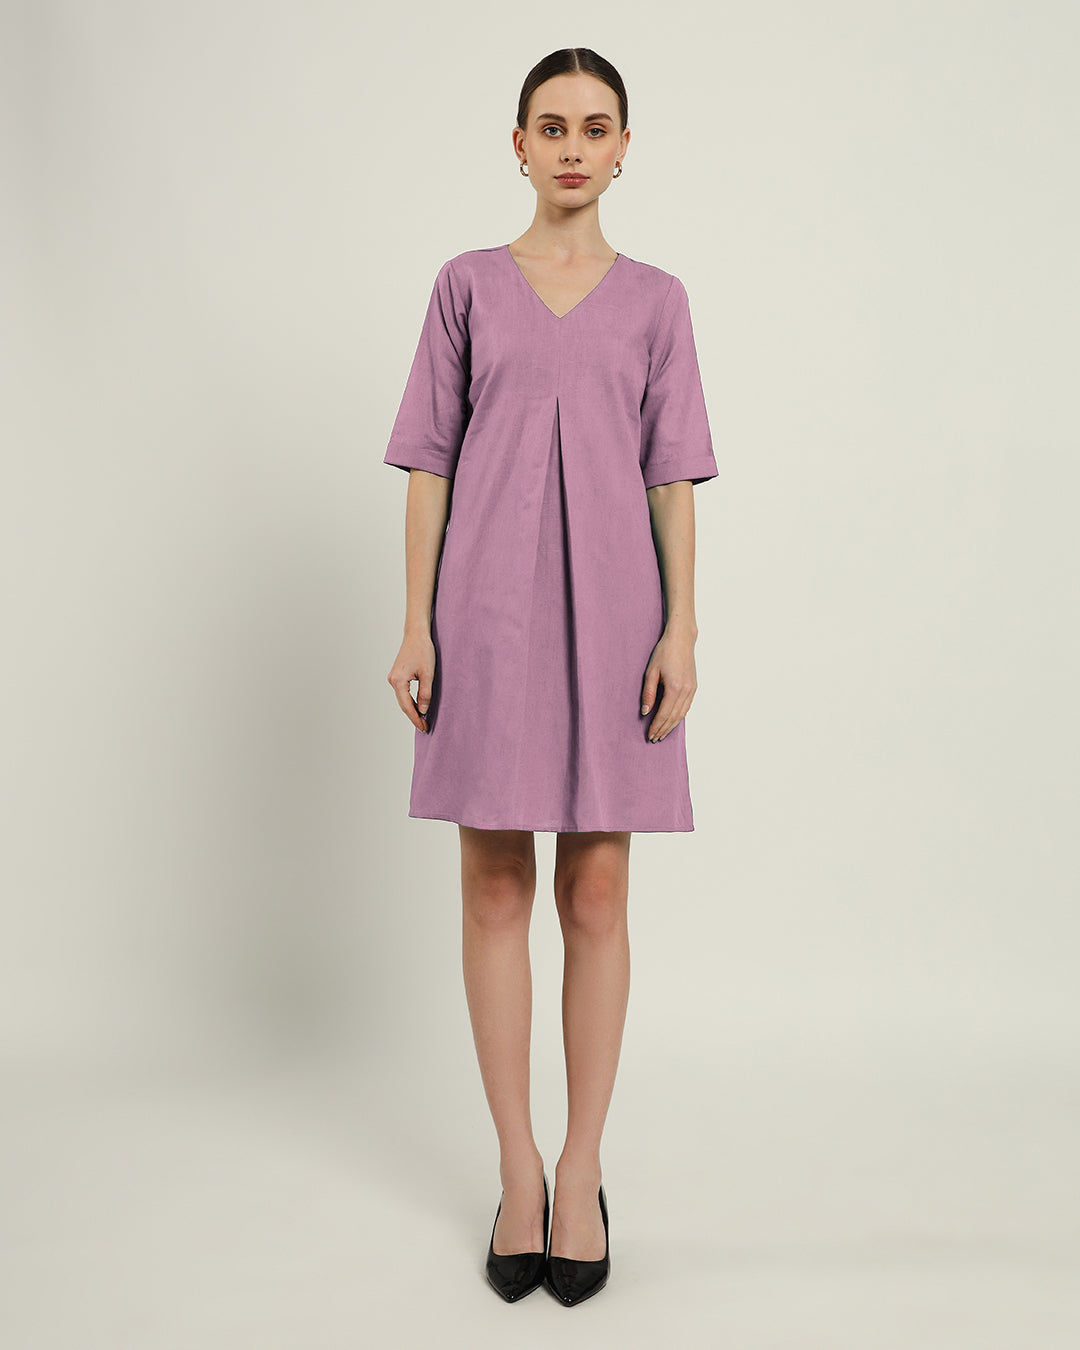 The Giza Purple Swirl Dress